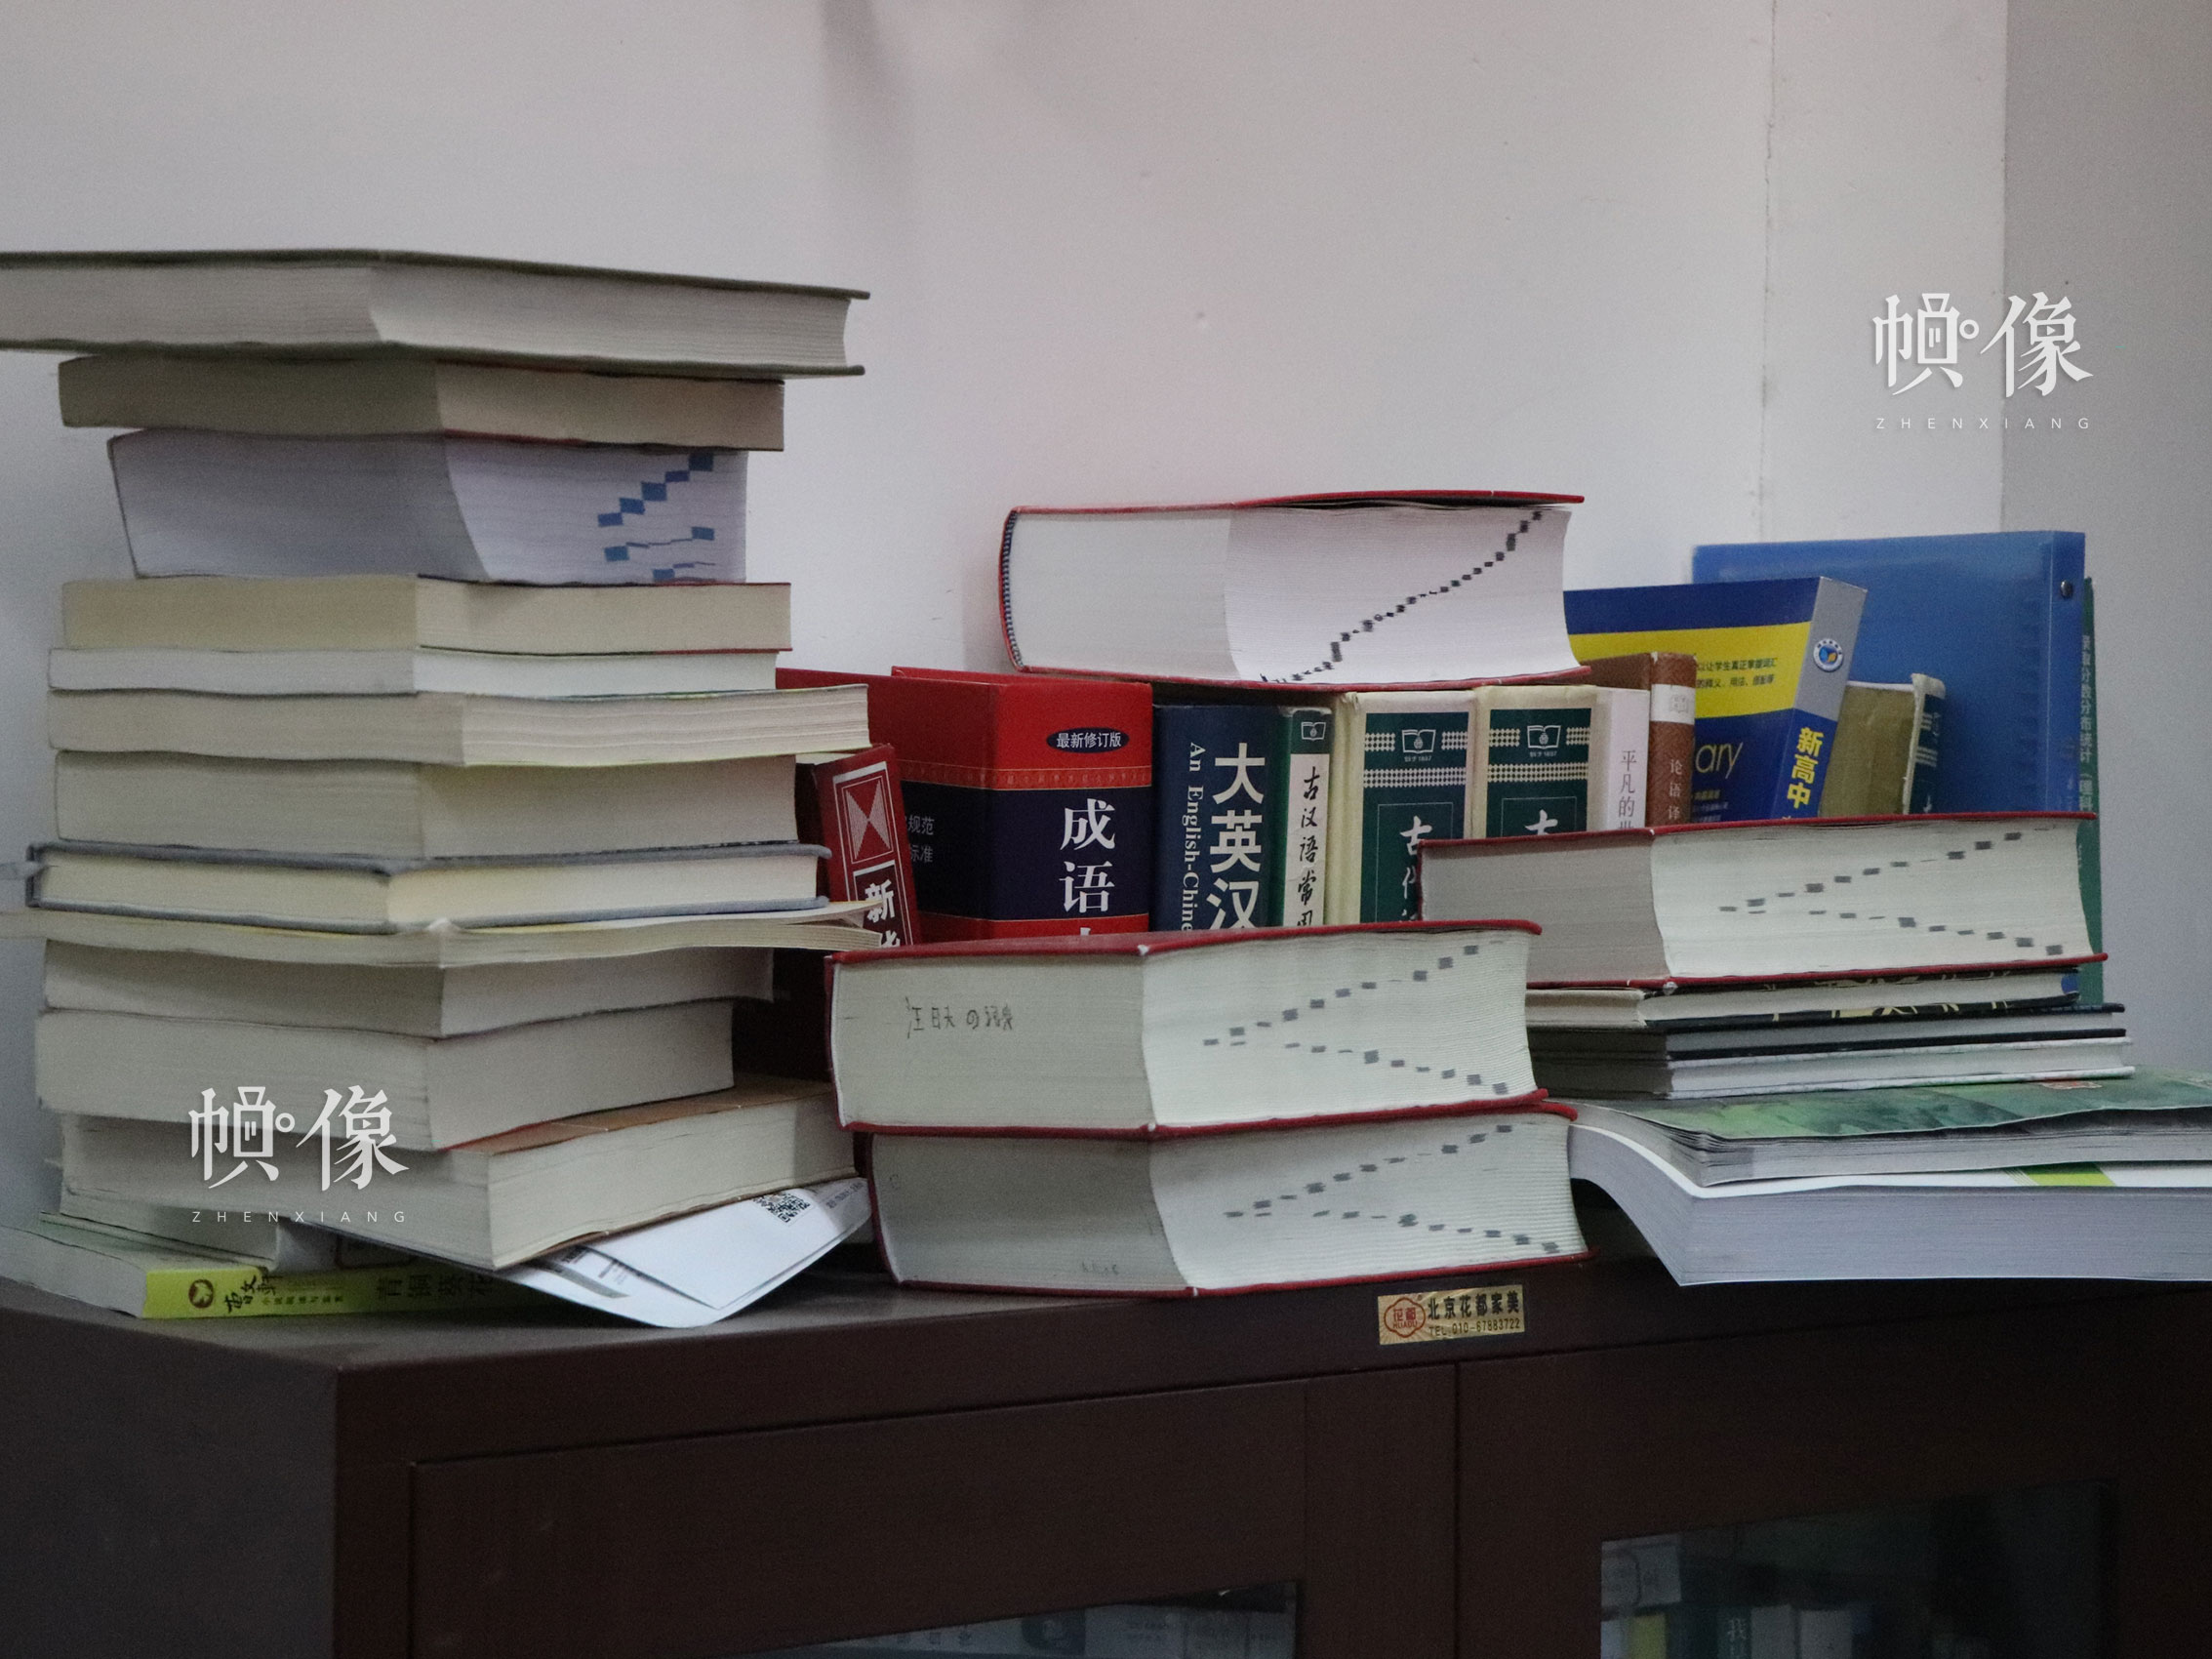 北京市石景山區某中學，教室一角堆落了學生的字典和書籍。中國網實習記者 韓依 攝